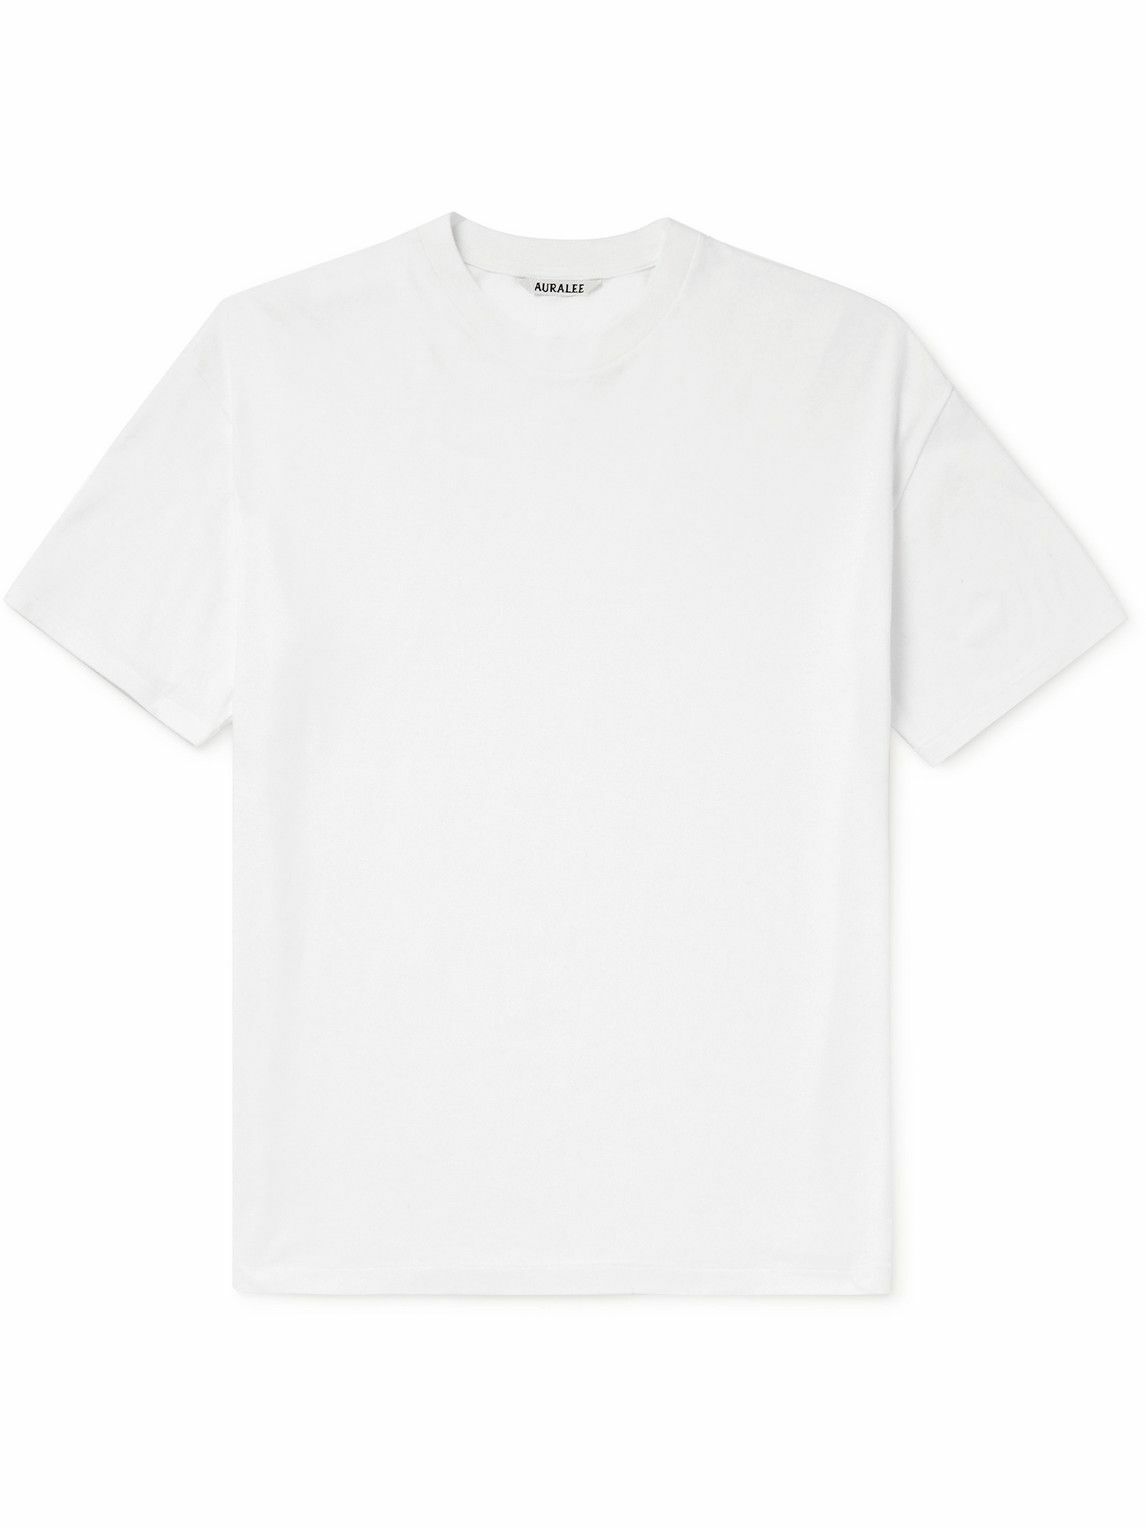 Auralee - Cotton-Jersey T-Shirt - White Auralee